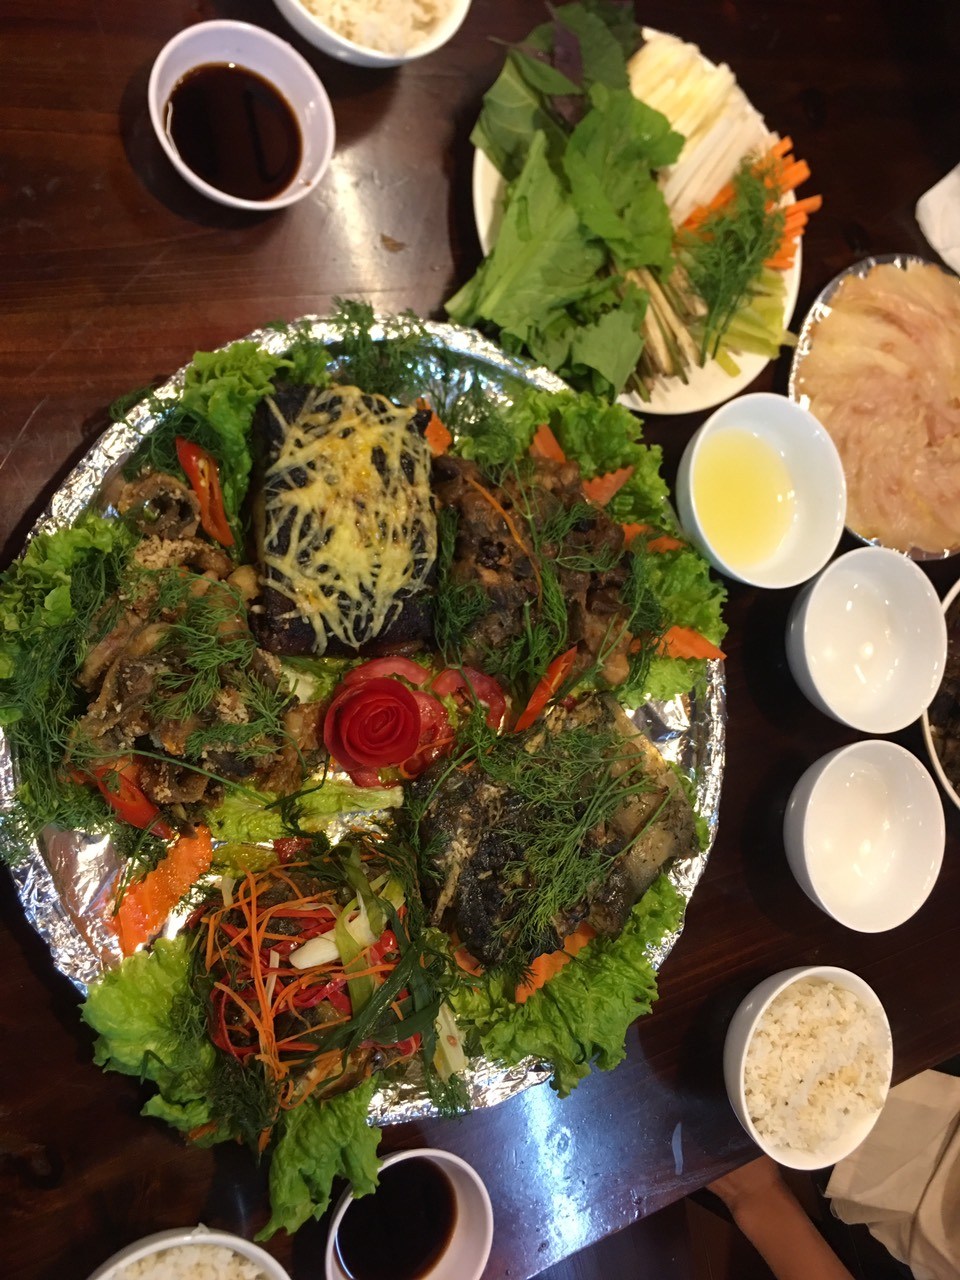 “Đánh chén no nê” với nhà hàng chuyên đặc sản núi rừng Sapa ngon ngất ngây 